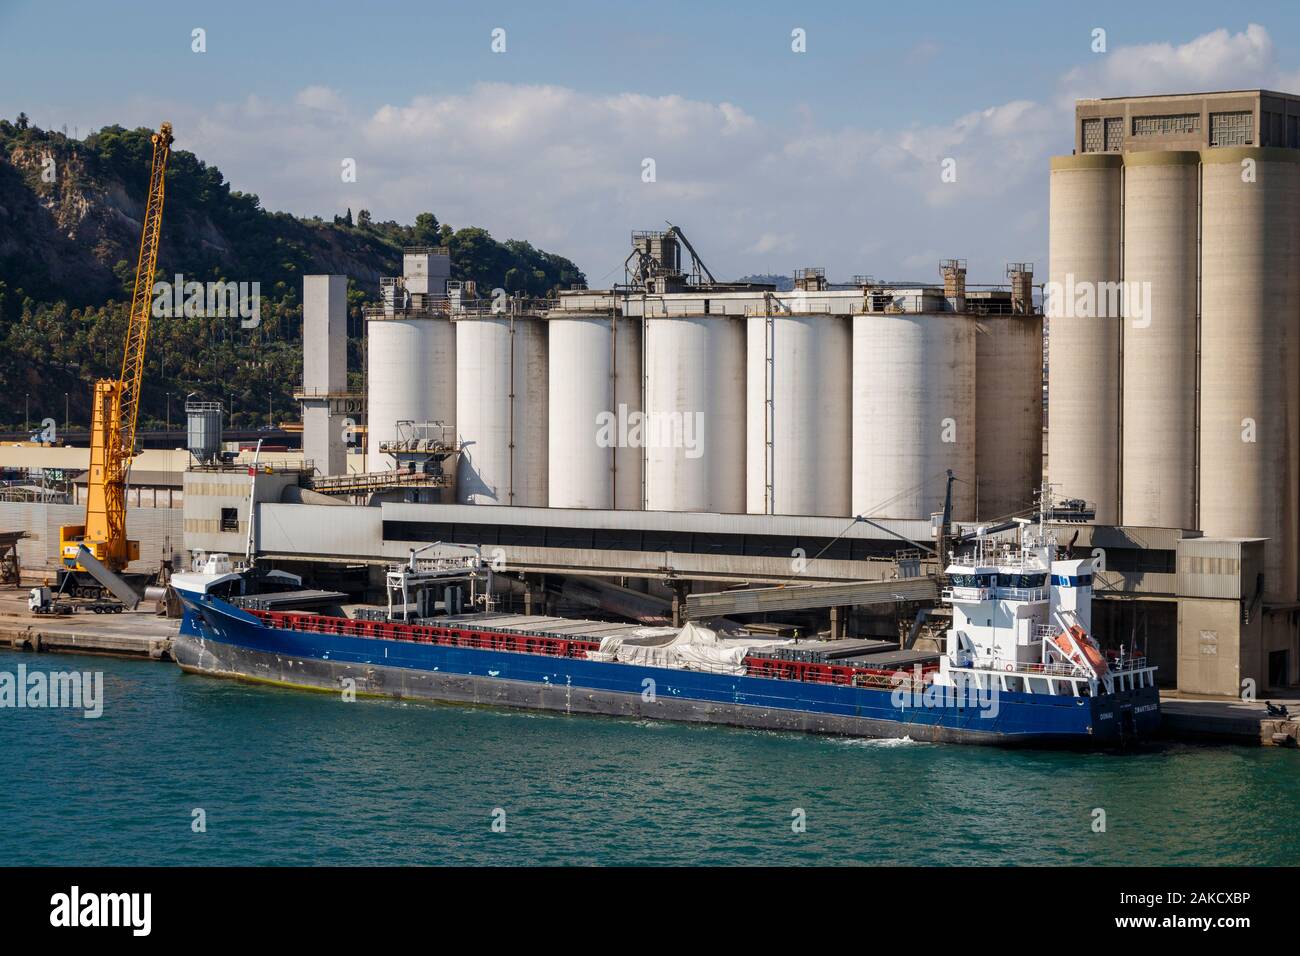 2011 Donau, buque de carga general, en el muelle del puerto de Barcelona, España. OMI 9385908. Navega bajo la bandera de los países Bajos. Silos Dockside. Foto de stock